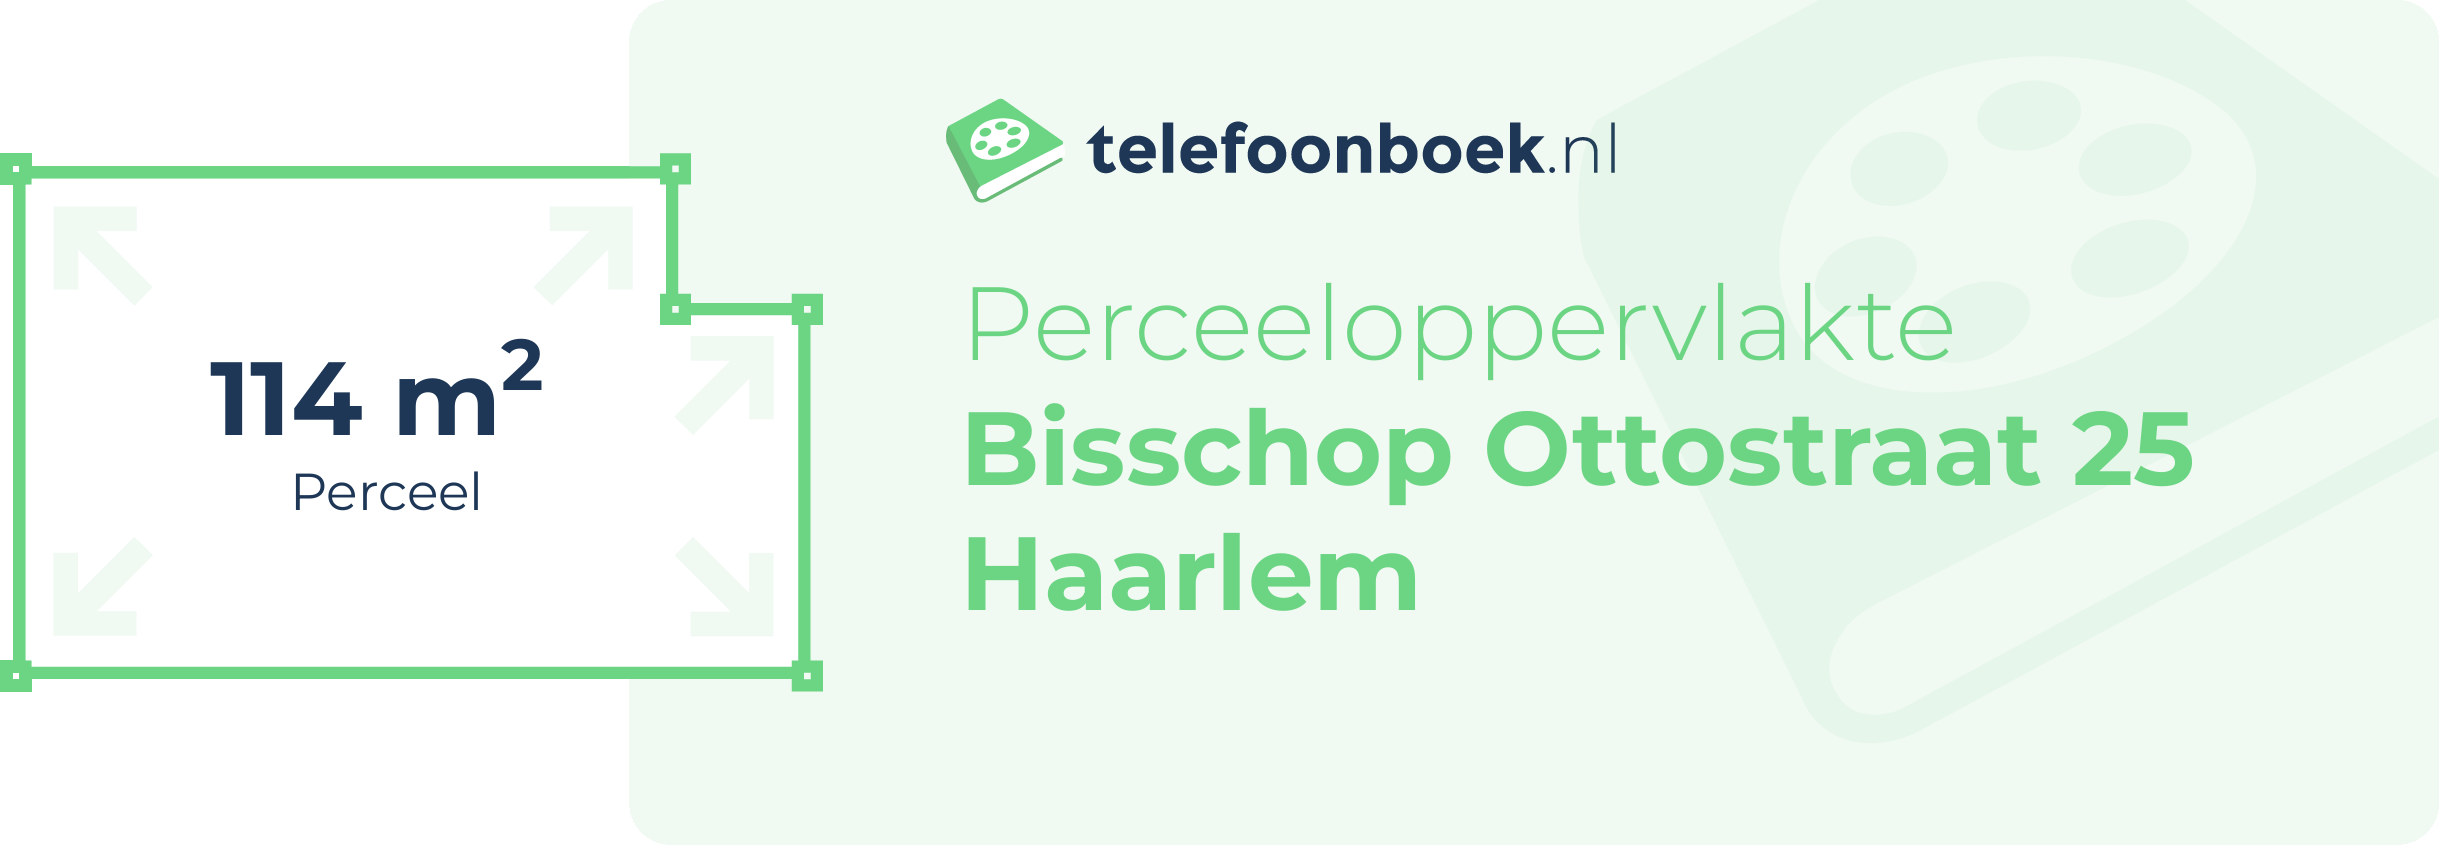 Perceeloppervlakte Bisschop Ottostraat 25 Haarlem